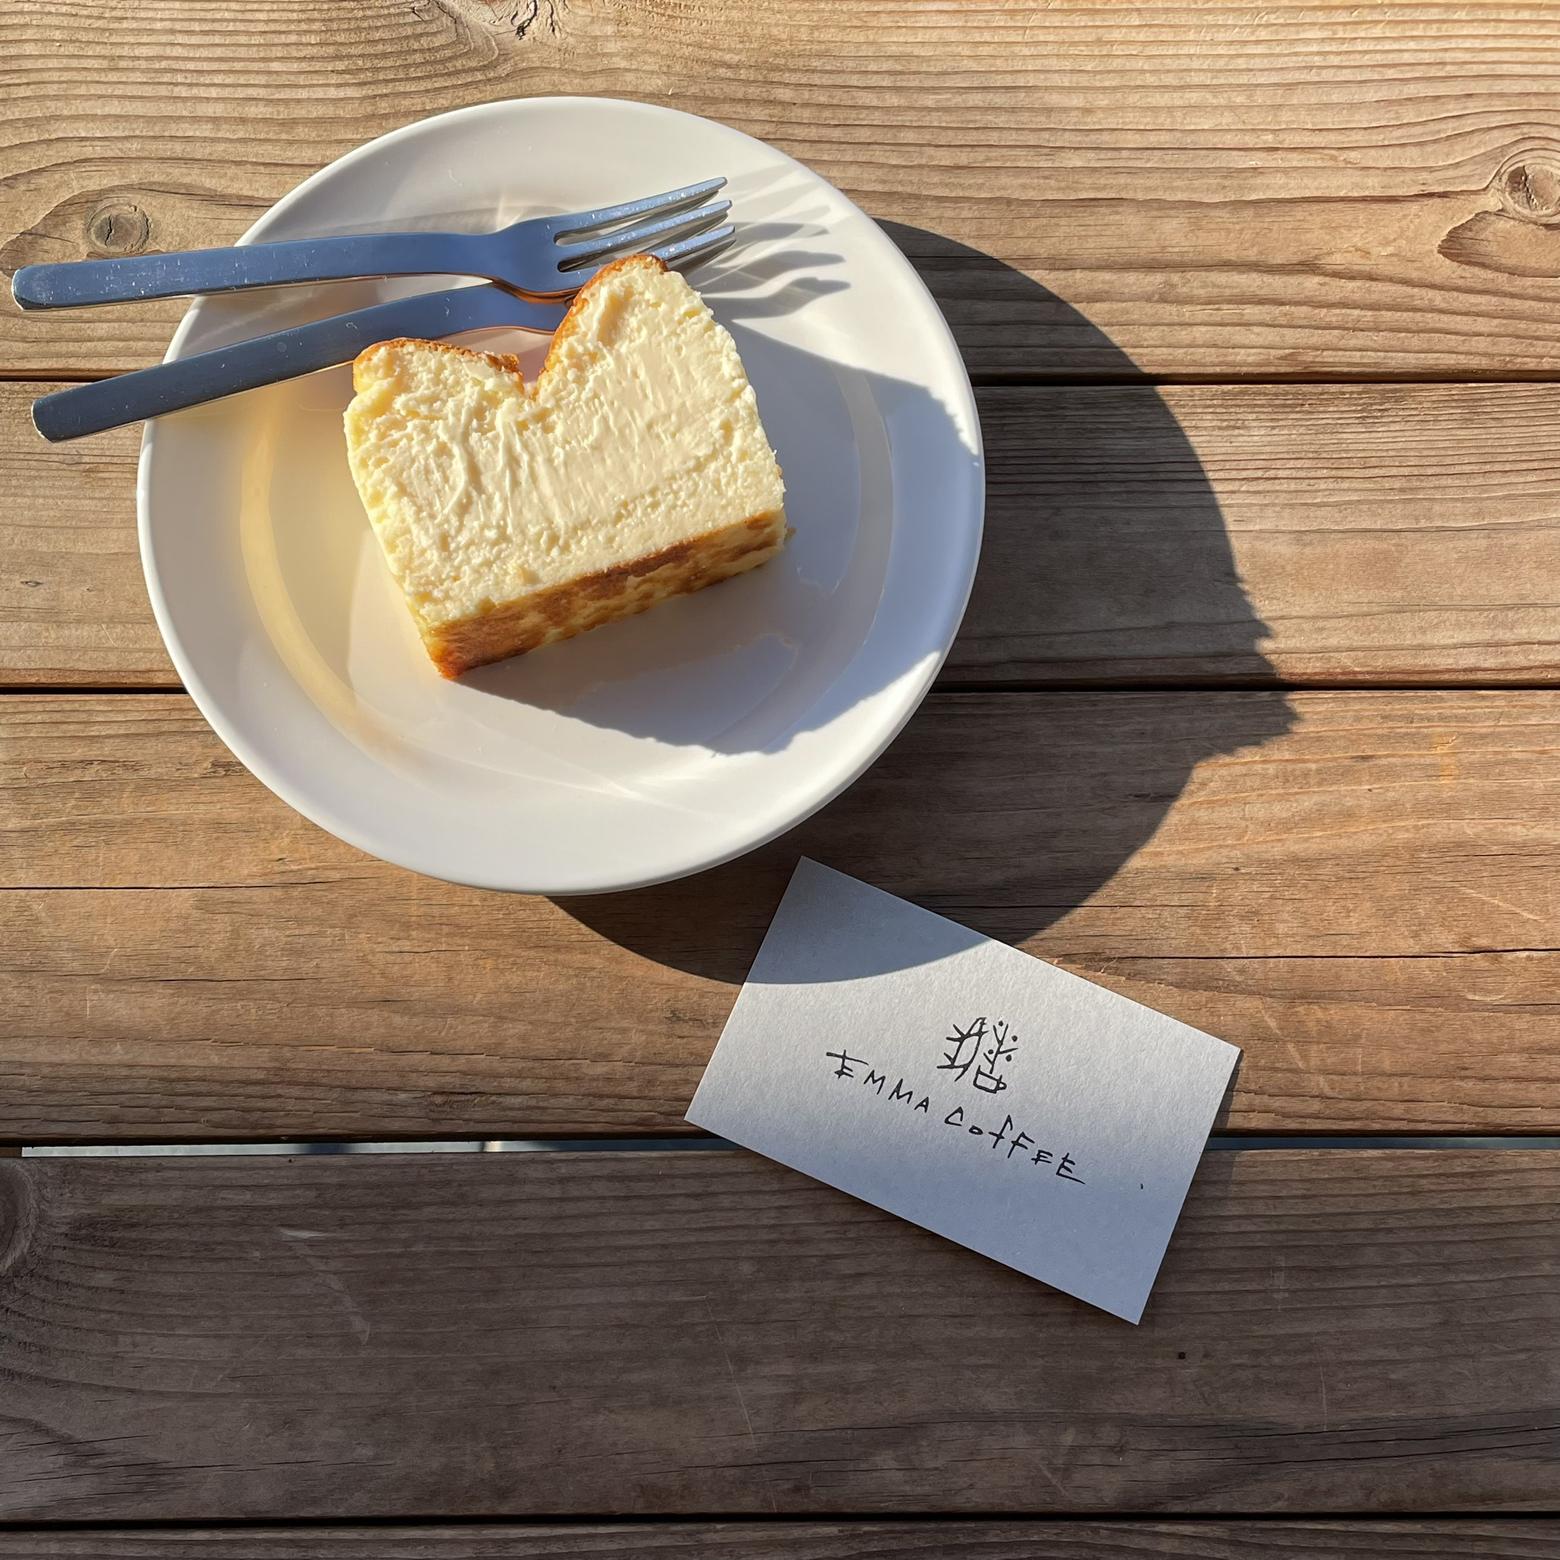 北摂のイチオシカフェ チーズケーキのテリーヌに初挑戦 Cotori333が投稿したフォトブック Lemon8